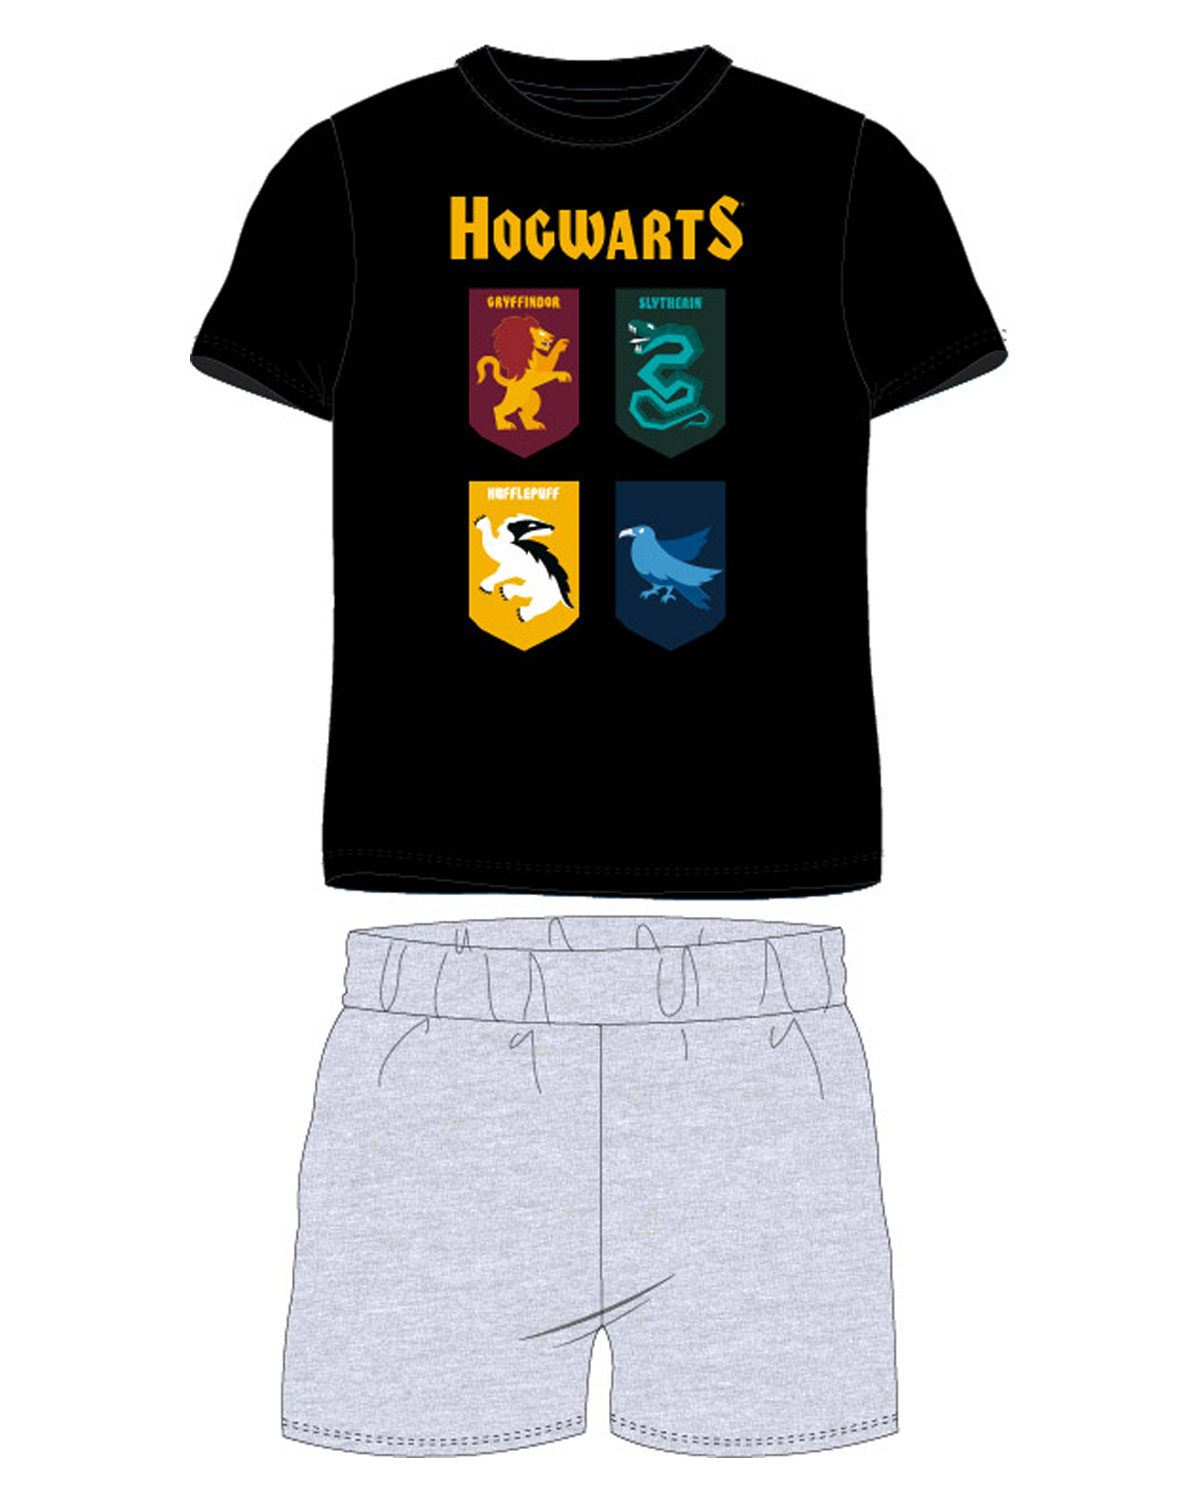 Harry Poter - licence Chlapecké pyžamo - Harry Potter 5204484, černá / světle šedý melír Barva: Černá, Velikost: 158